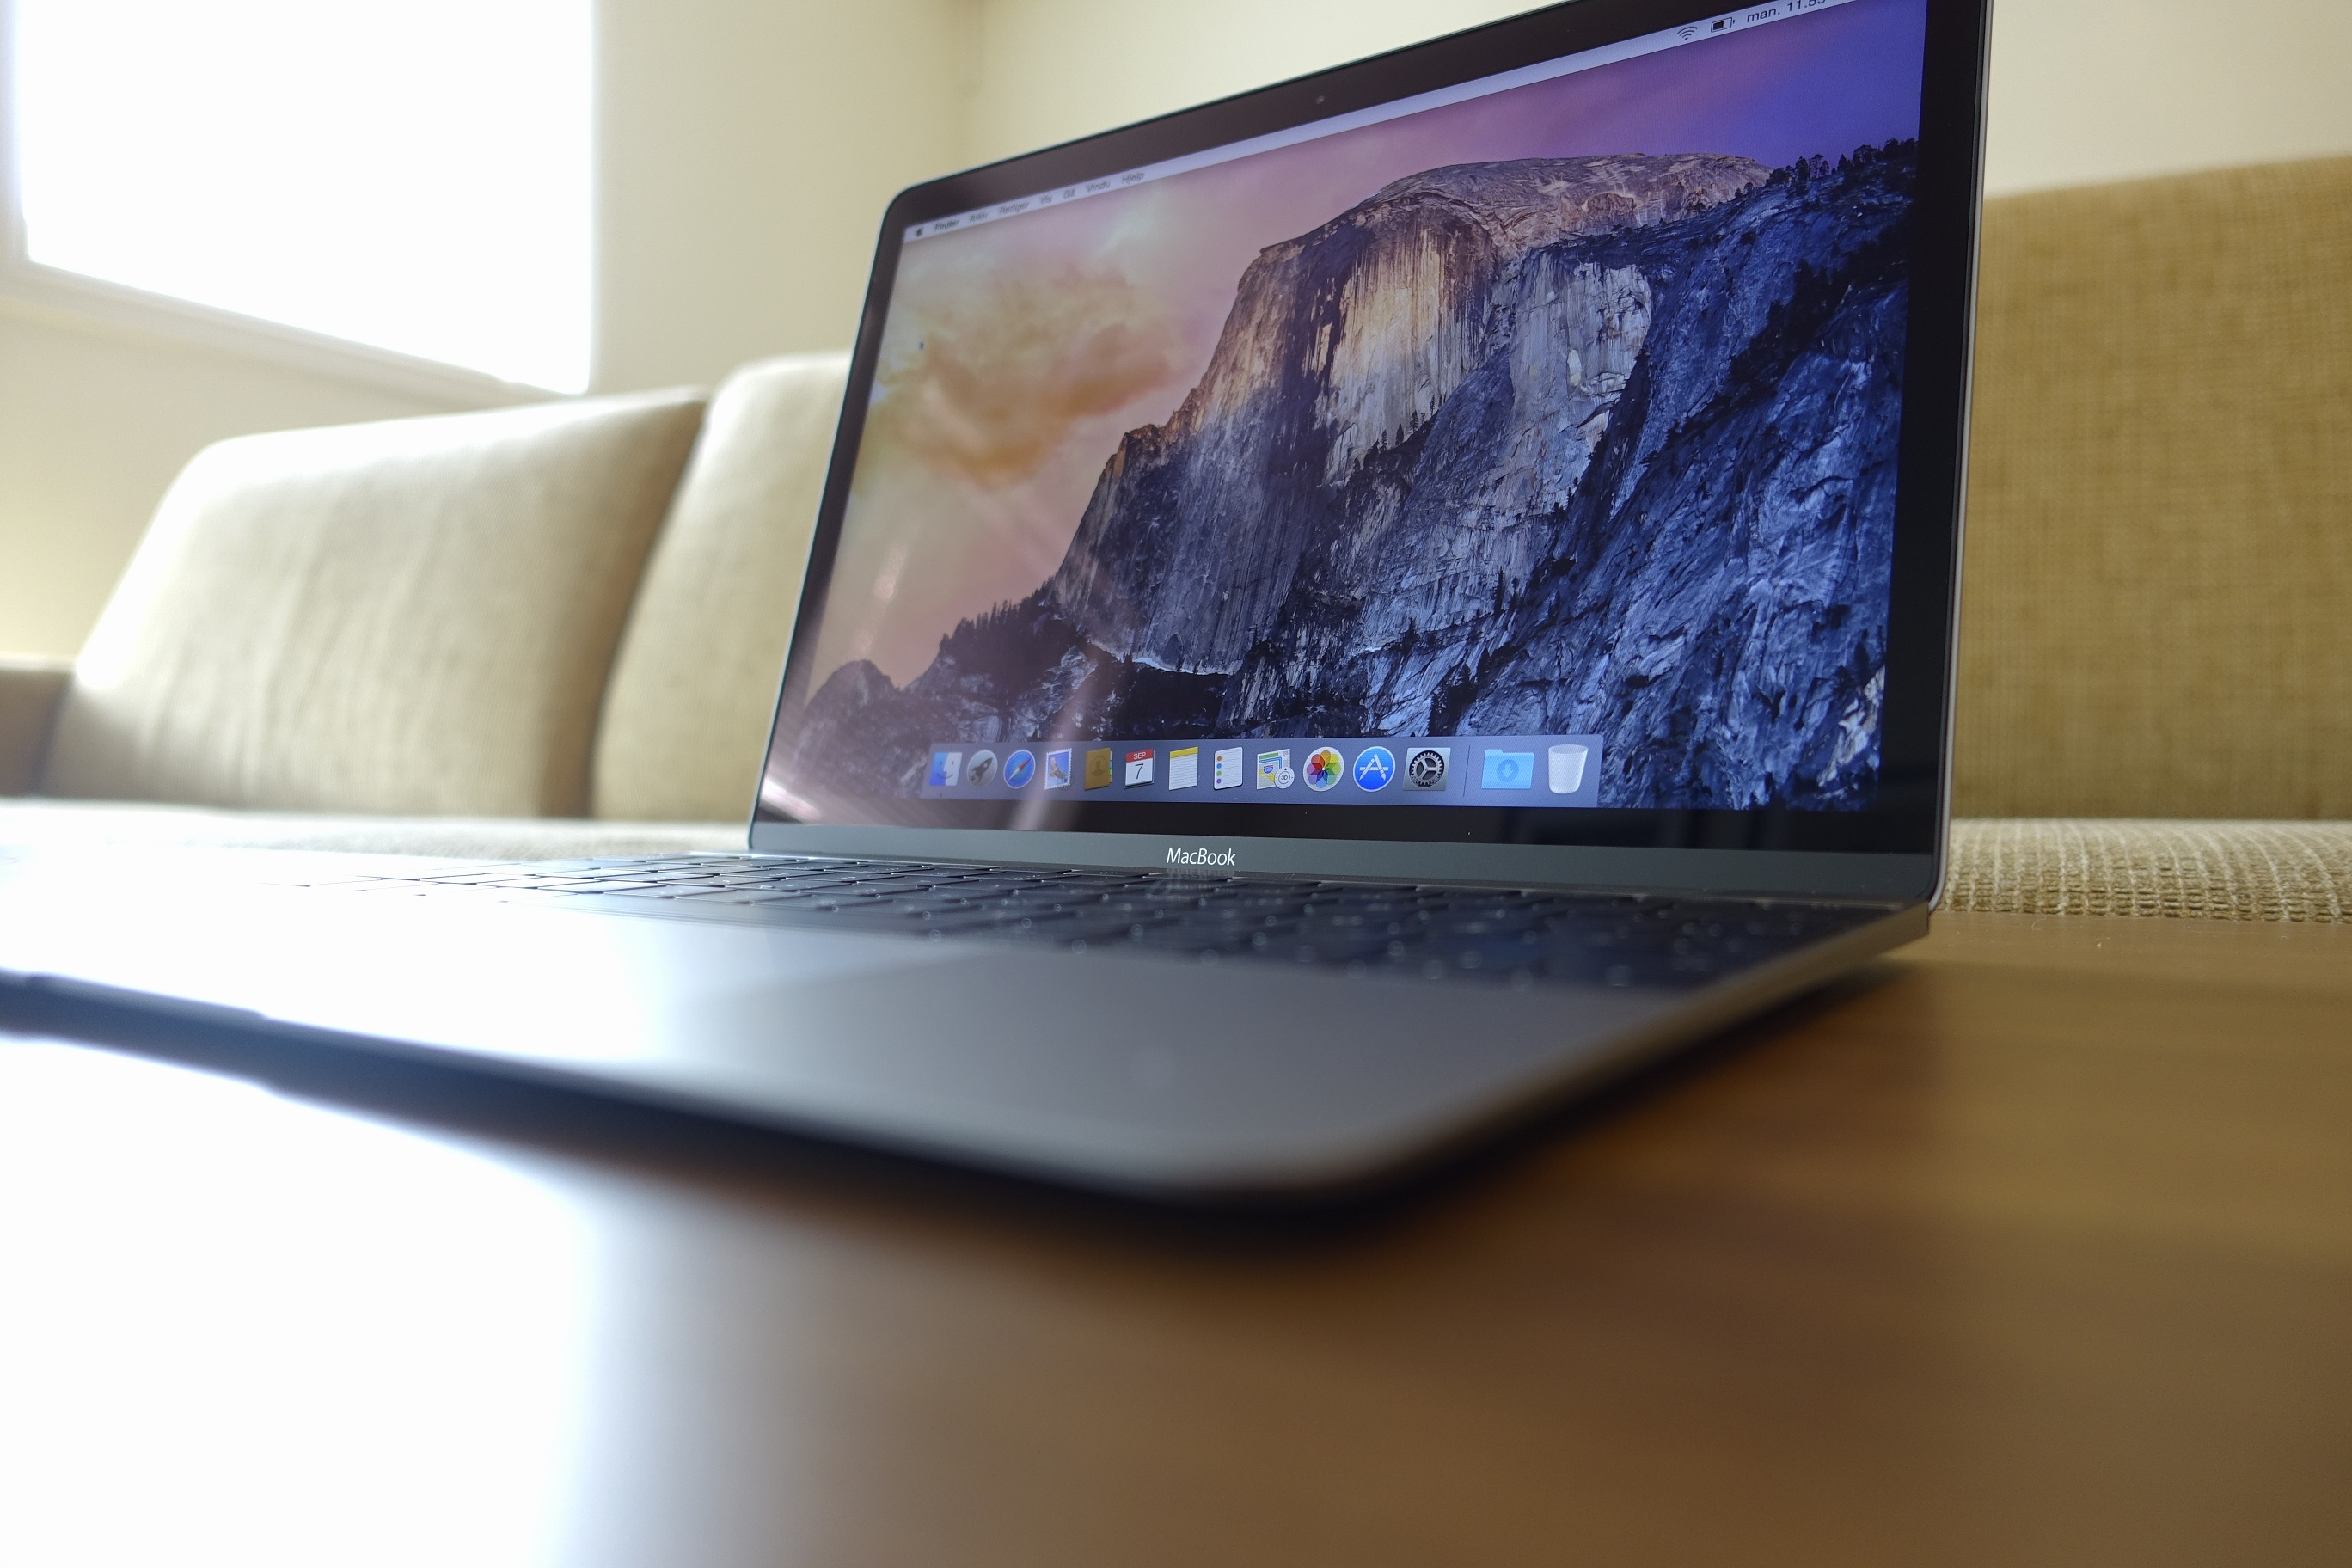 Vil de nye Mac-ene få fart på salget igjen?